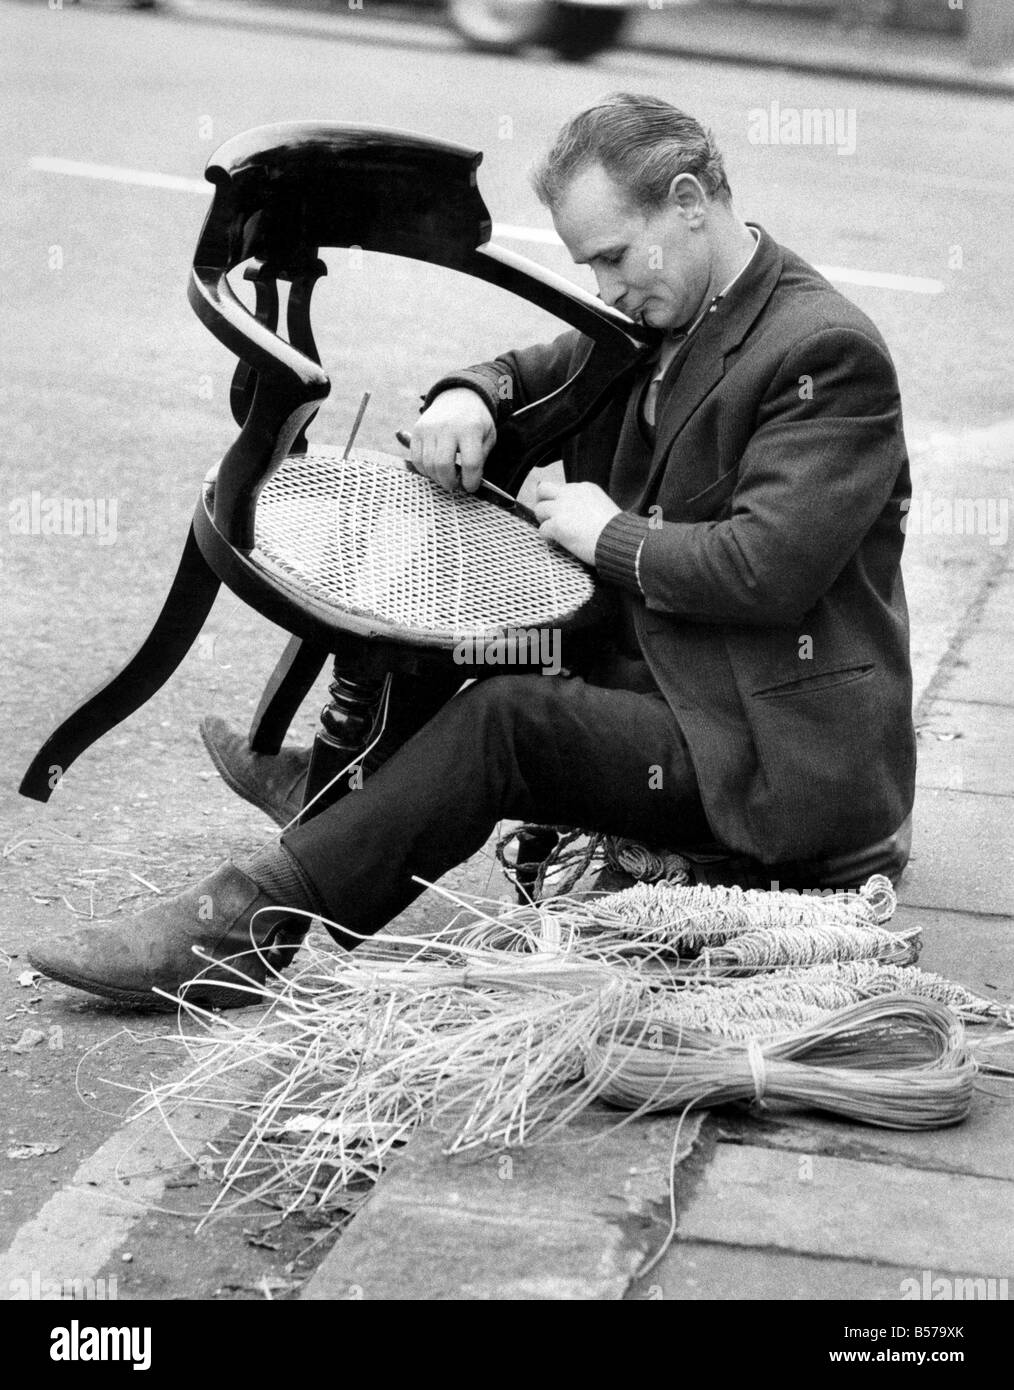 Chair Caning: Ein ungewohnter Anblick in London das alte Handwerk der Stuhl Mr John Browning 38 jährige von Battersea, Reparatur einen Rohrstock Stuhl, sitzt auf dem Rand der Fahrbahn, an der Ecke der Ladbroke Grove Rohrstock. Er erlernte das Handwerk von seinem 65-jähriger Schwiegervater, der es sein ganzes Leben lang getan hat. Er reist durch London und bekommt Arbeit auf Empfehlung. Januar 1971 P004943 Stockfoto